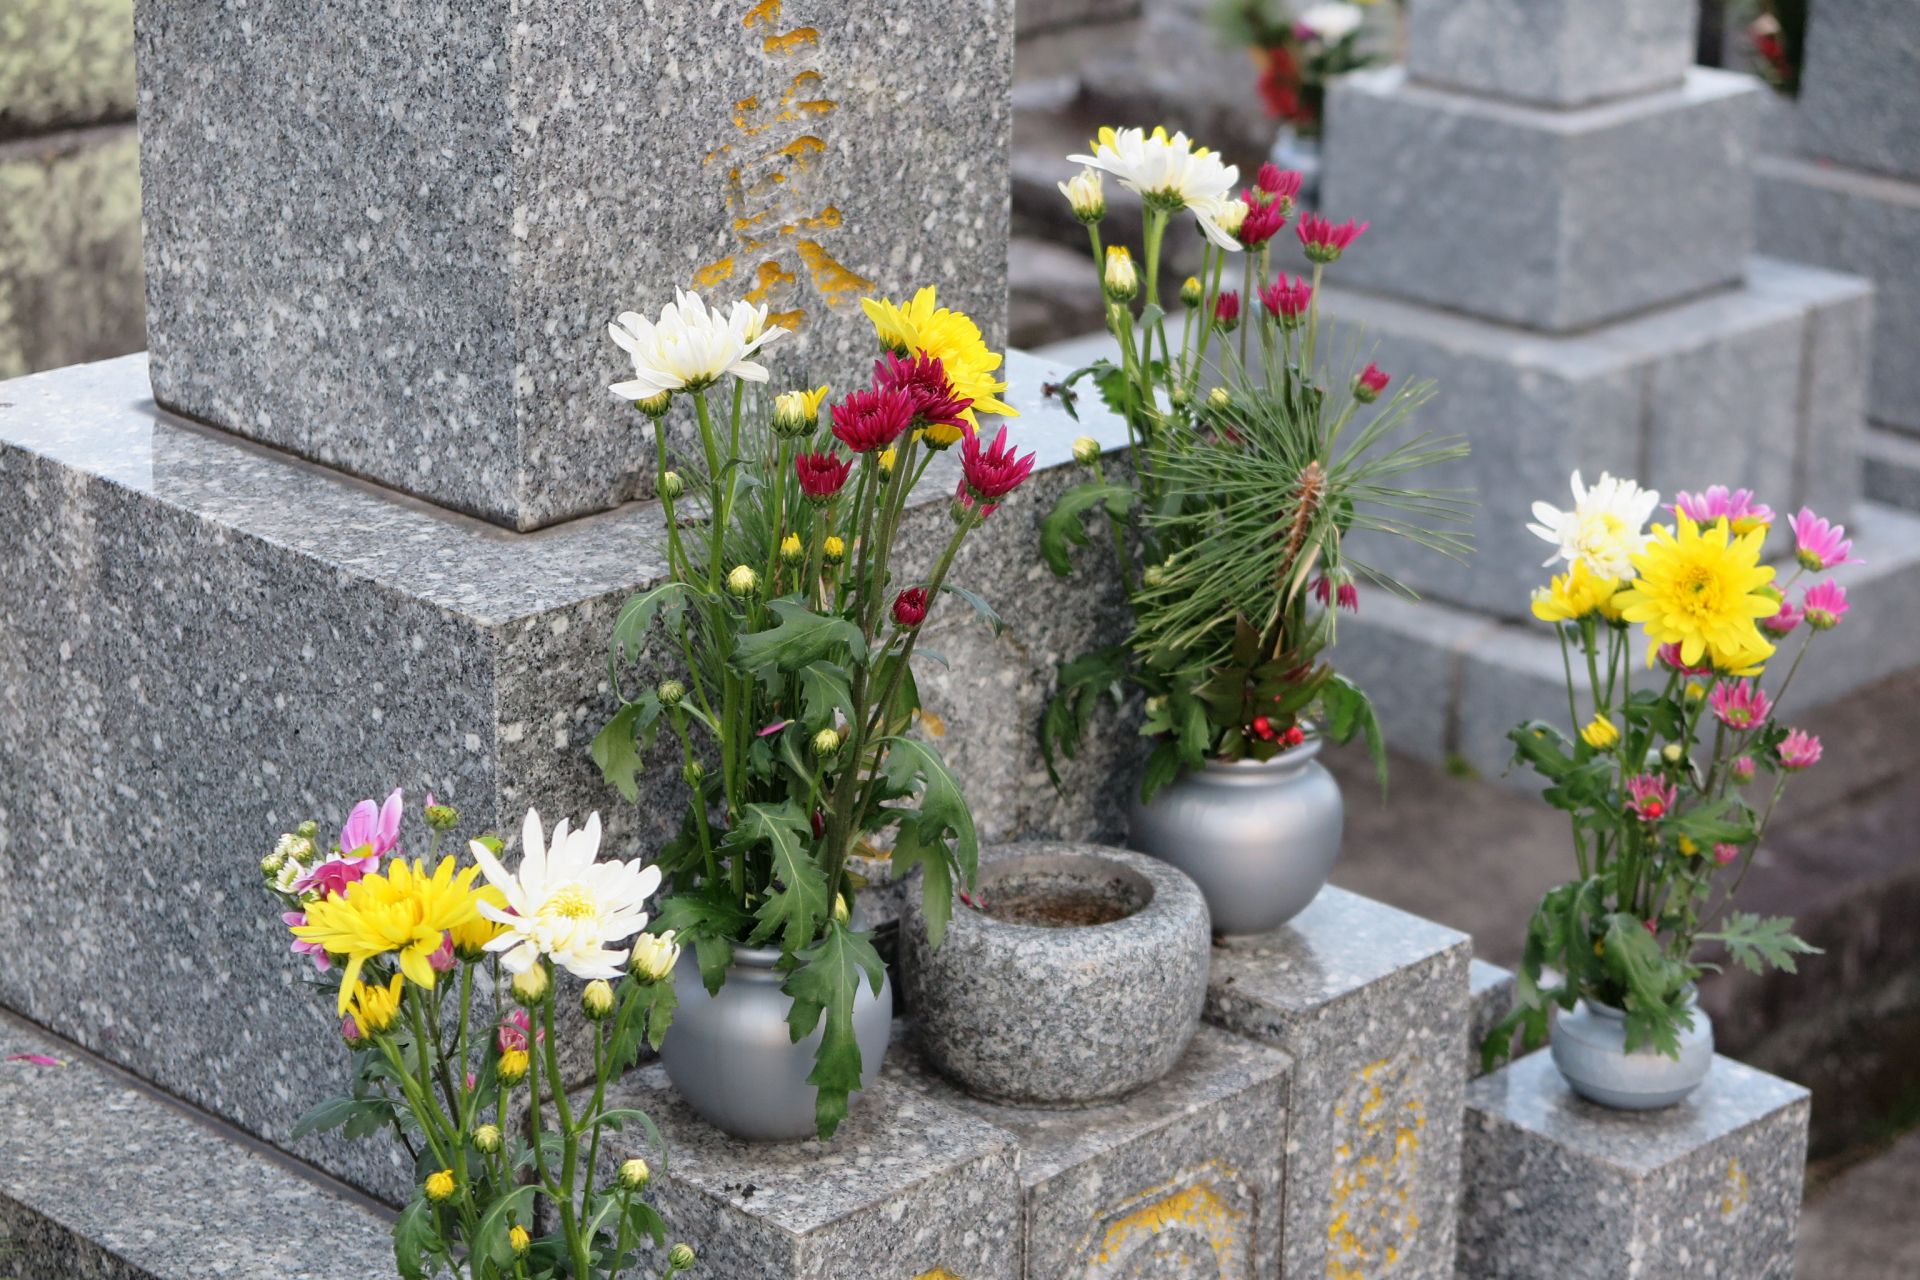 永代供養墓を東京で探しています